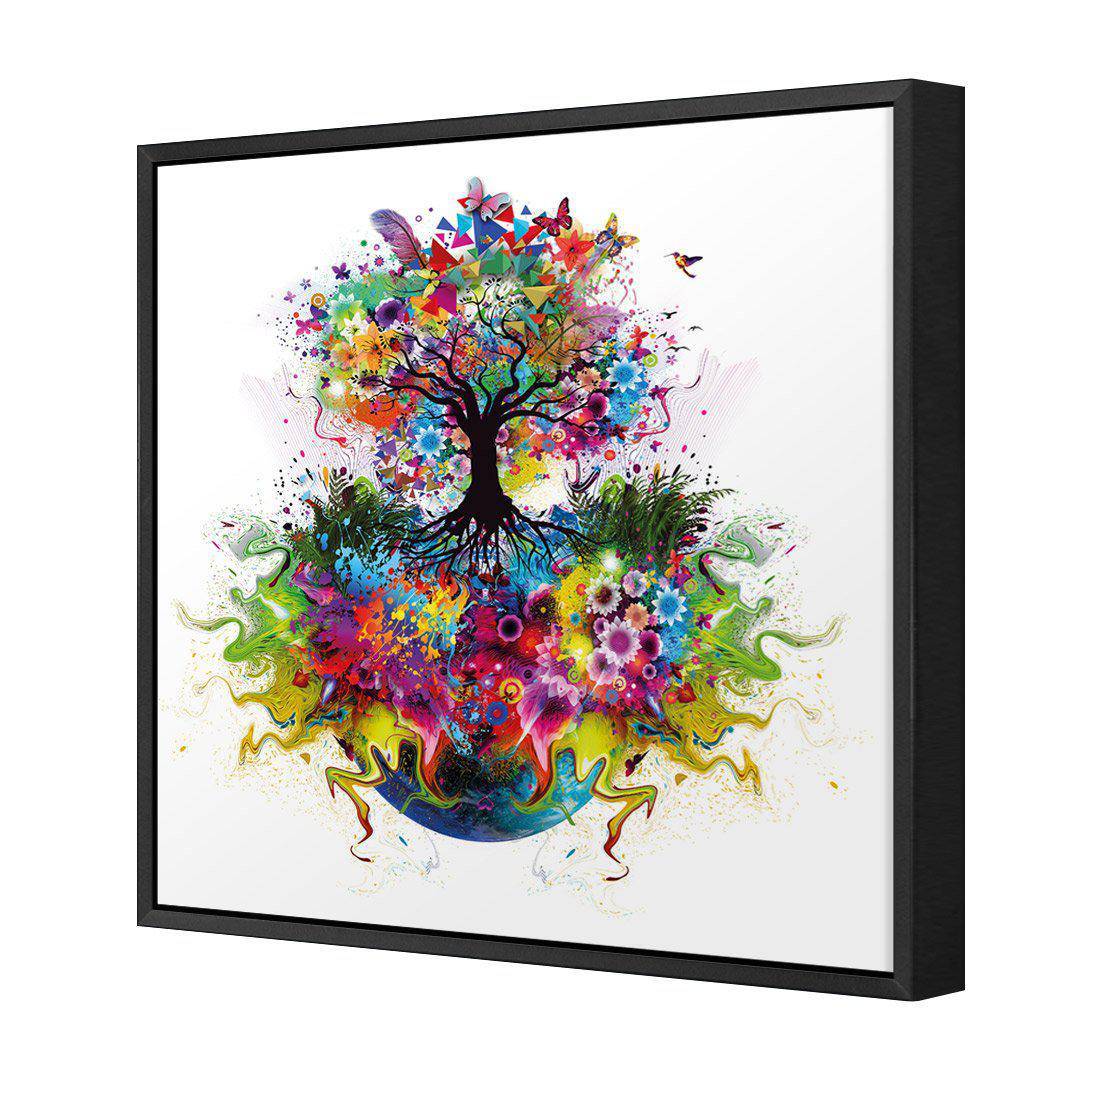 Flower Power Canvas Art-Canvas-Wall Art Designs-30x30cm-Canvas - Black Frame-Wall Art Designs